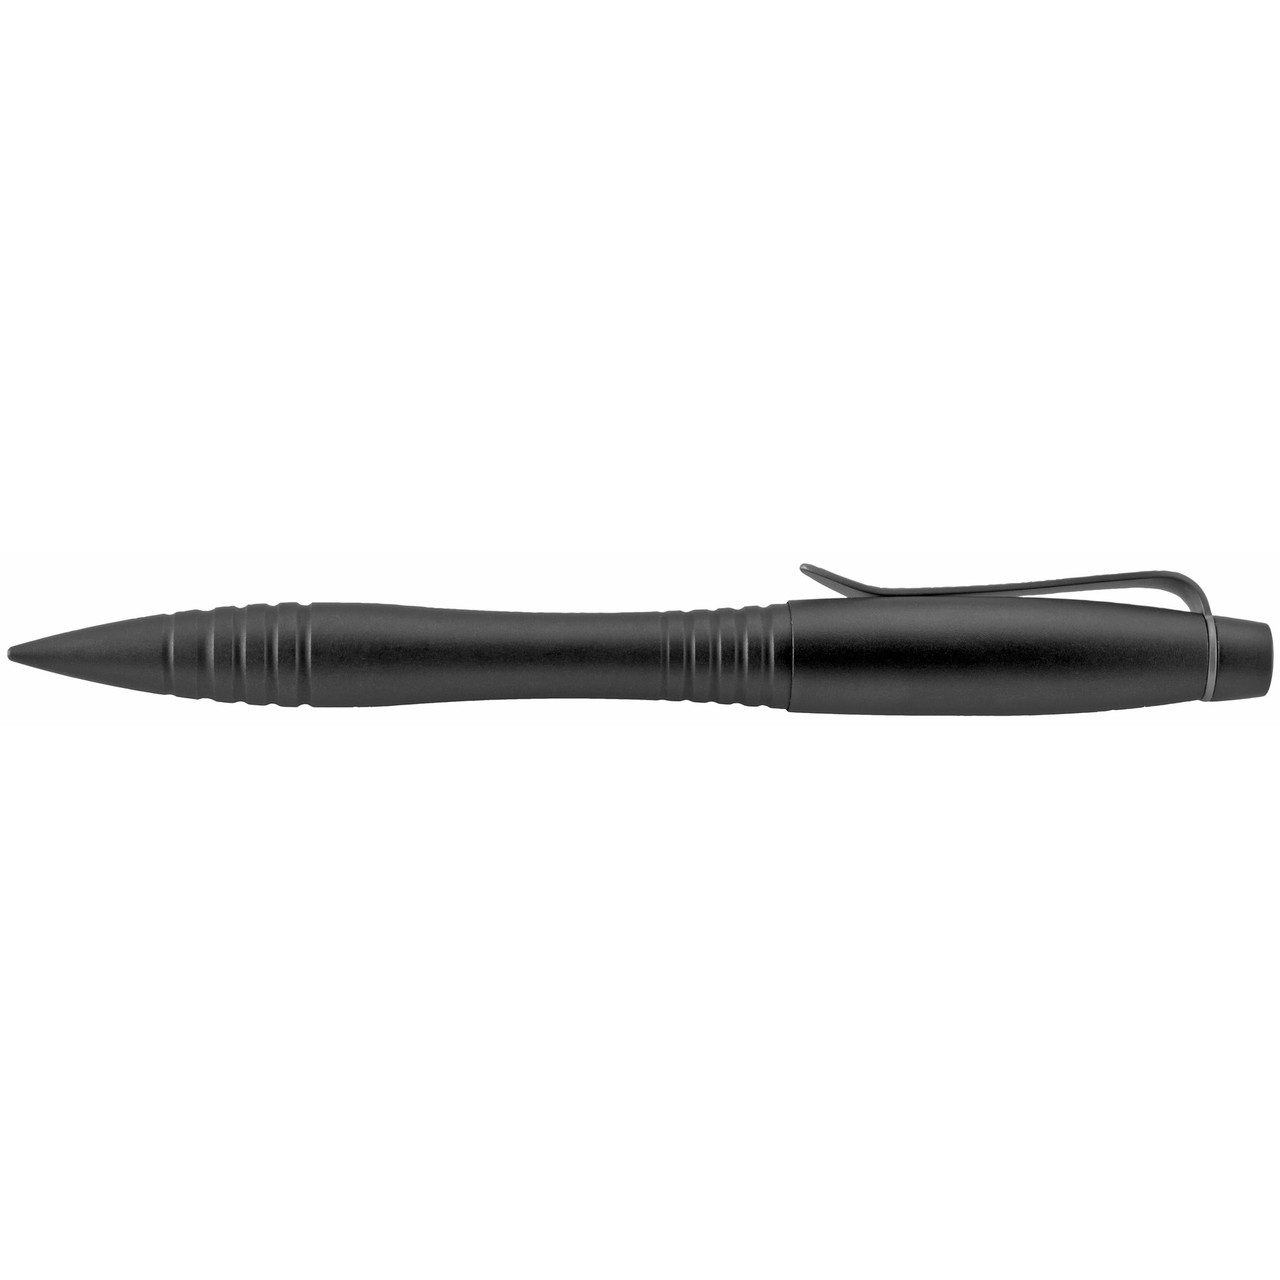 Columbia River TPENWK Williams Tactical Pen 6" Blk